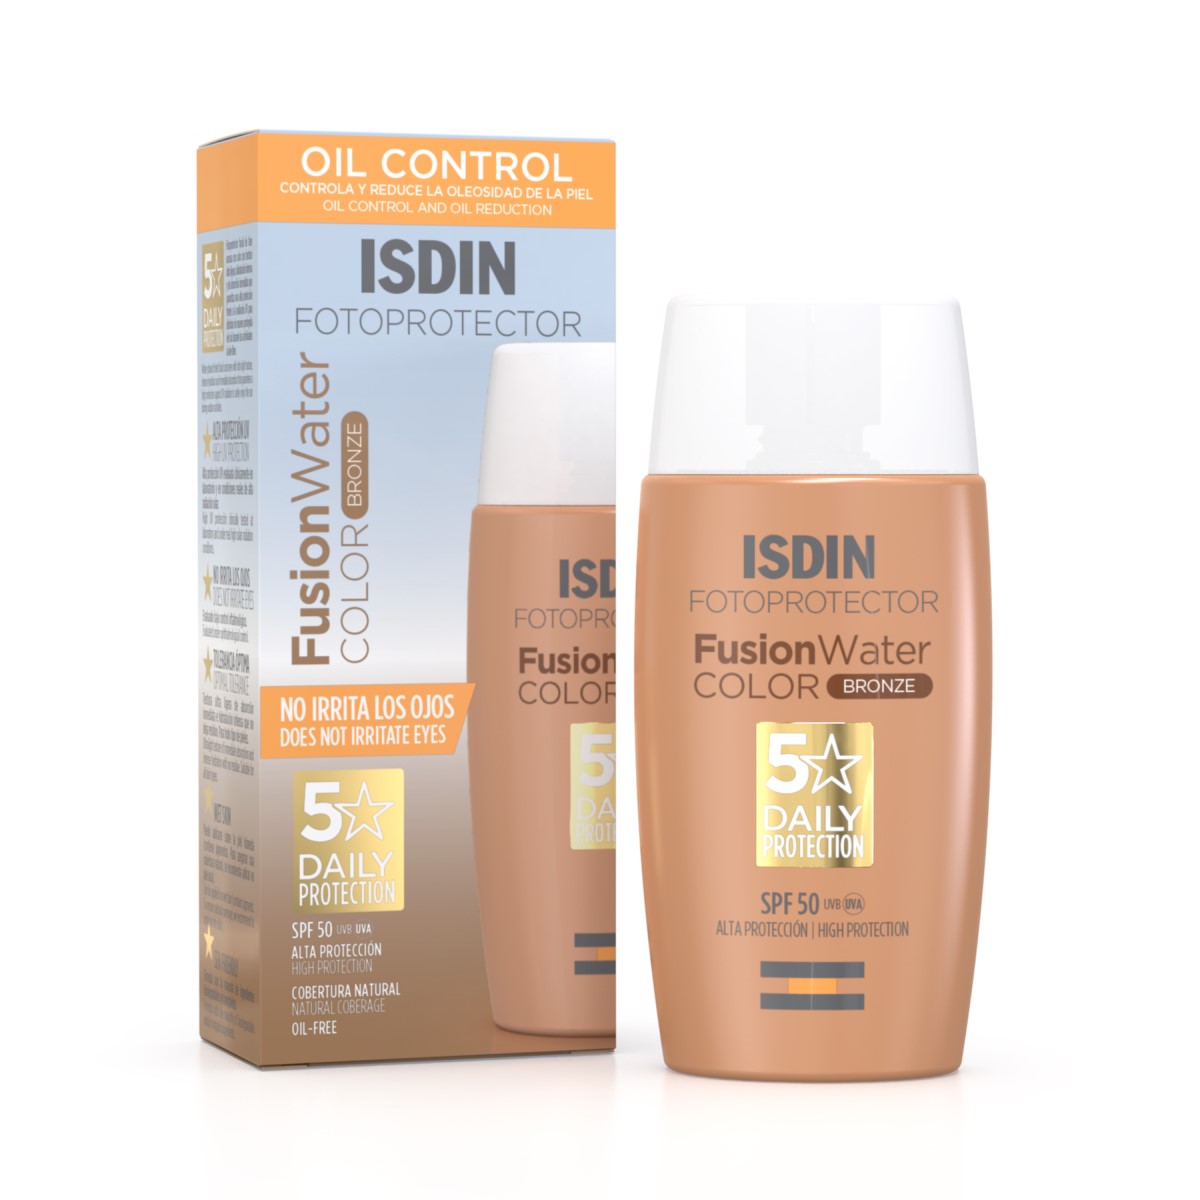 Isdin Fusion Water SPF50+ Color Bronze, fotoprotector para todo tipo de piel 50ml.